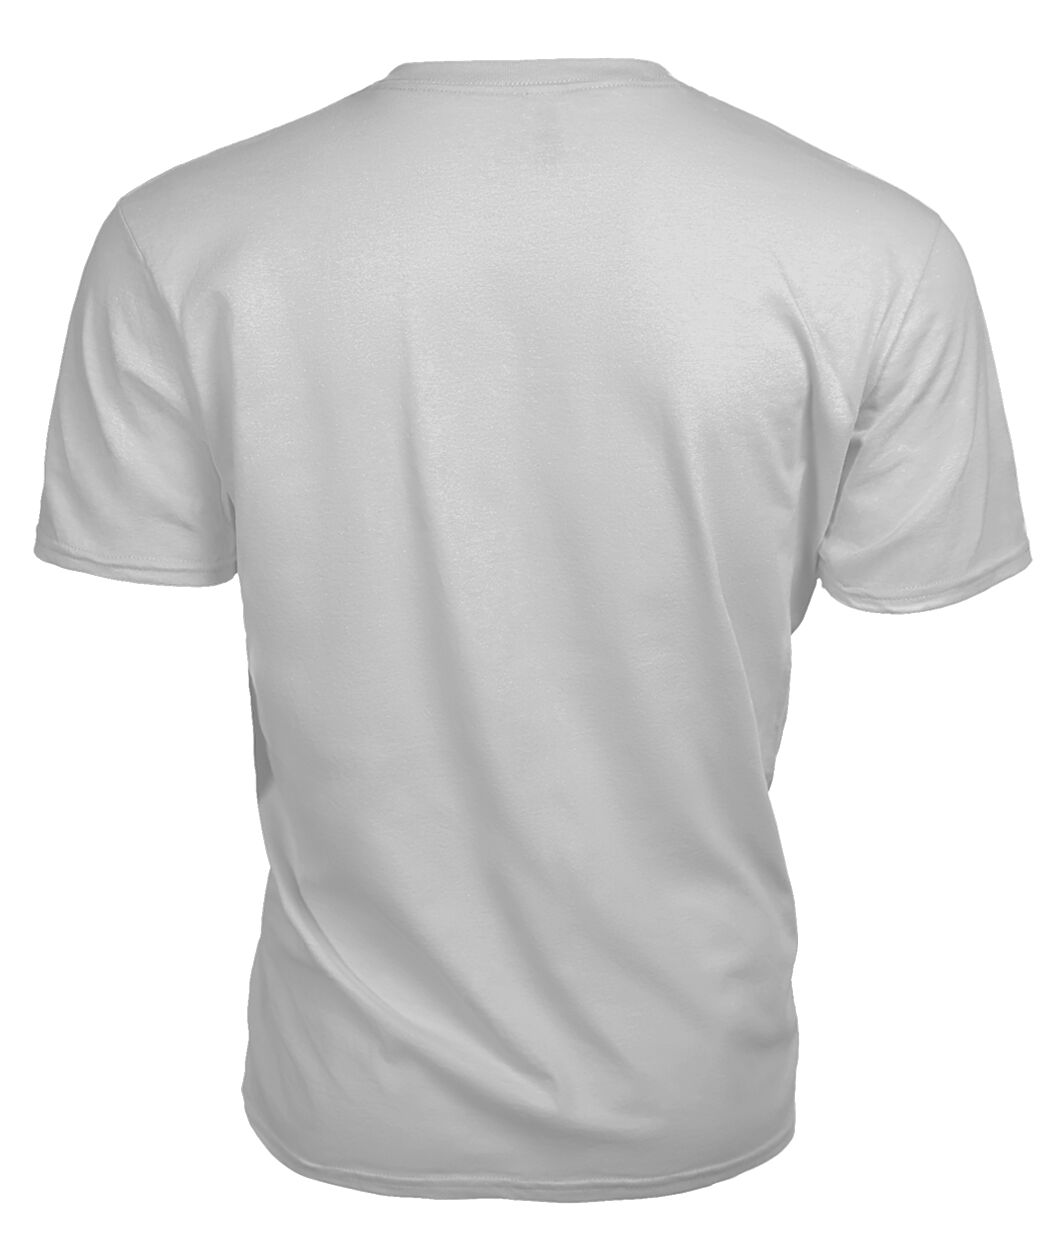 Adair Family Tartan - 2D T-shirt